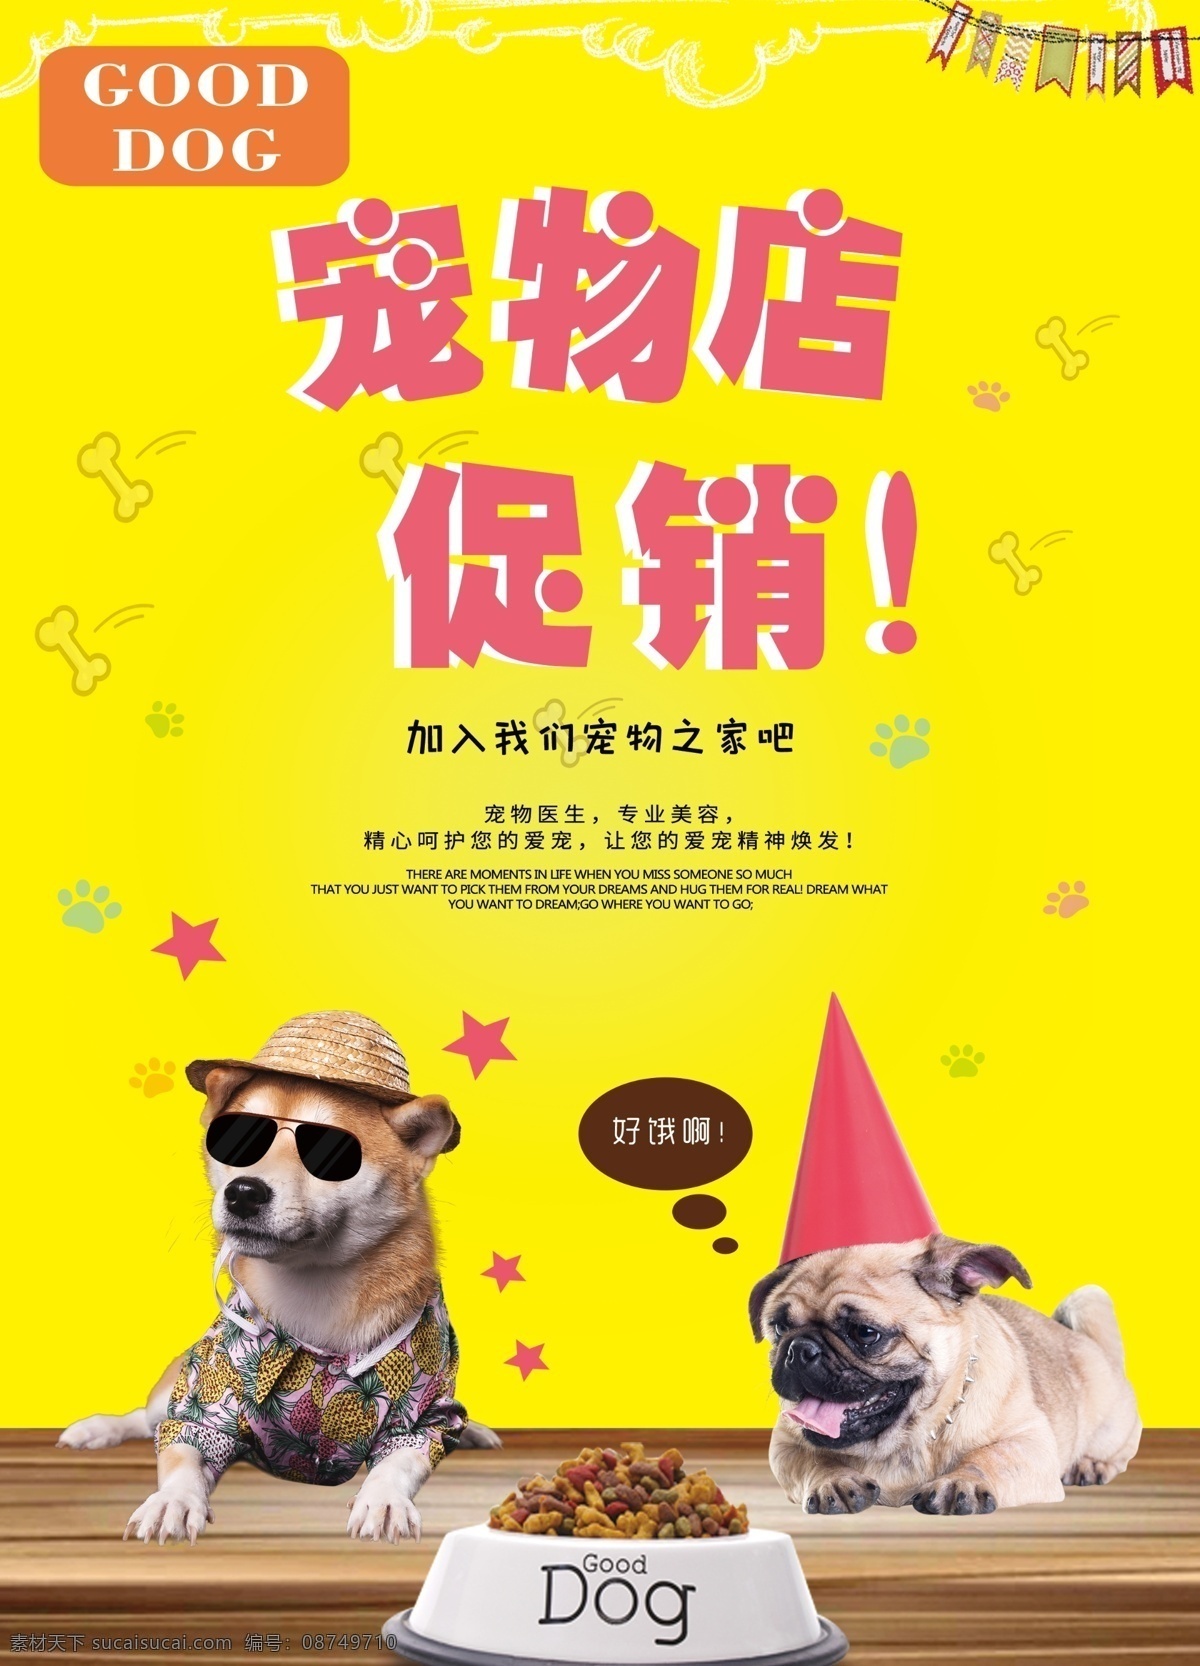 宠物 店 促销 dm 宣传单 宠物店 宠物美容 宠物用品